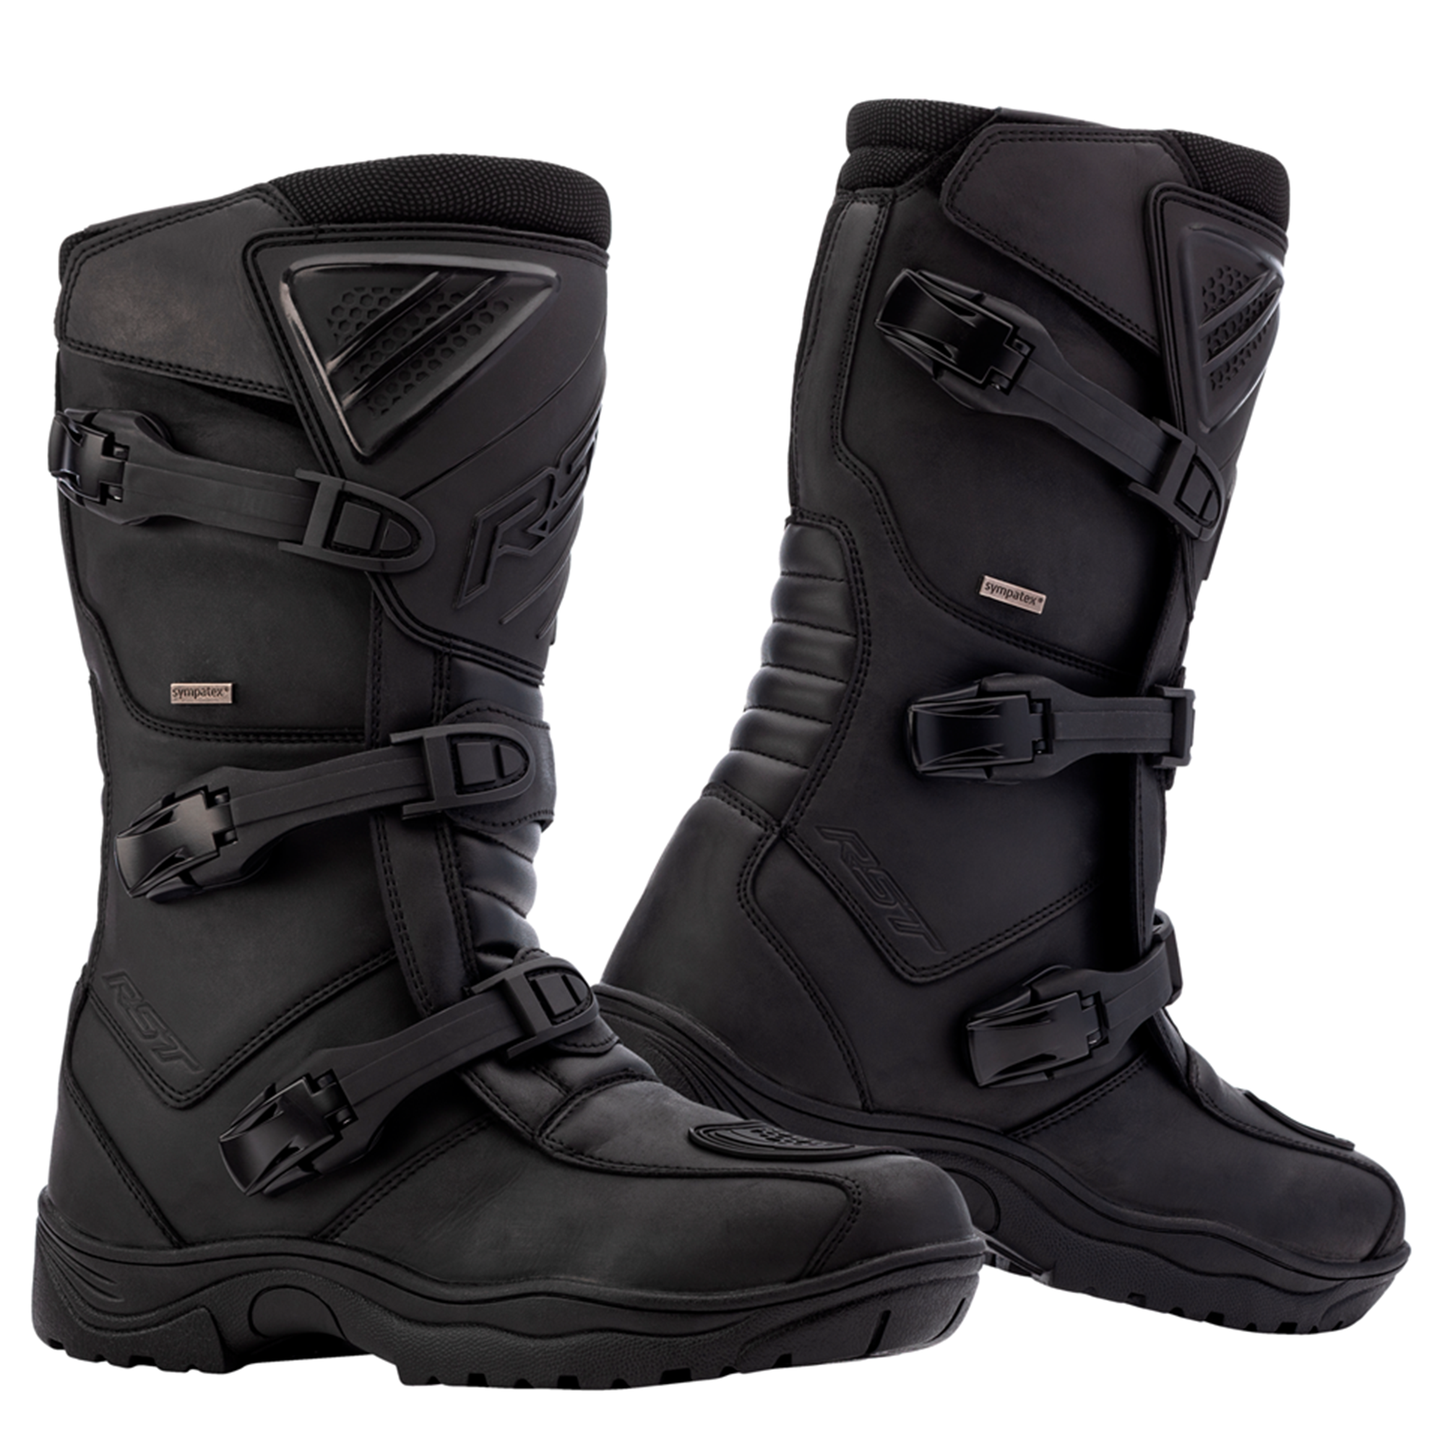 RST Ambush (CE) Waterproof Boots - Black